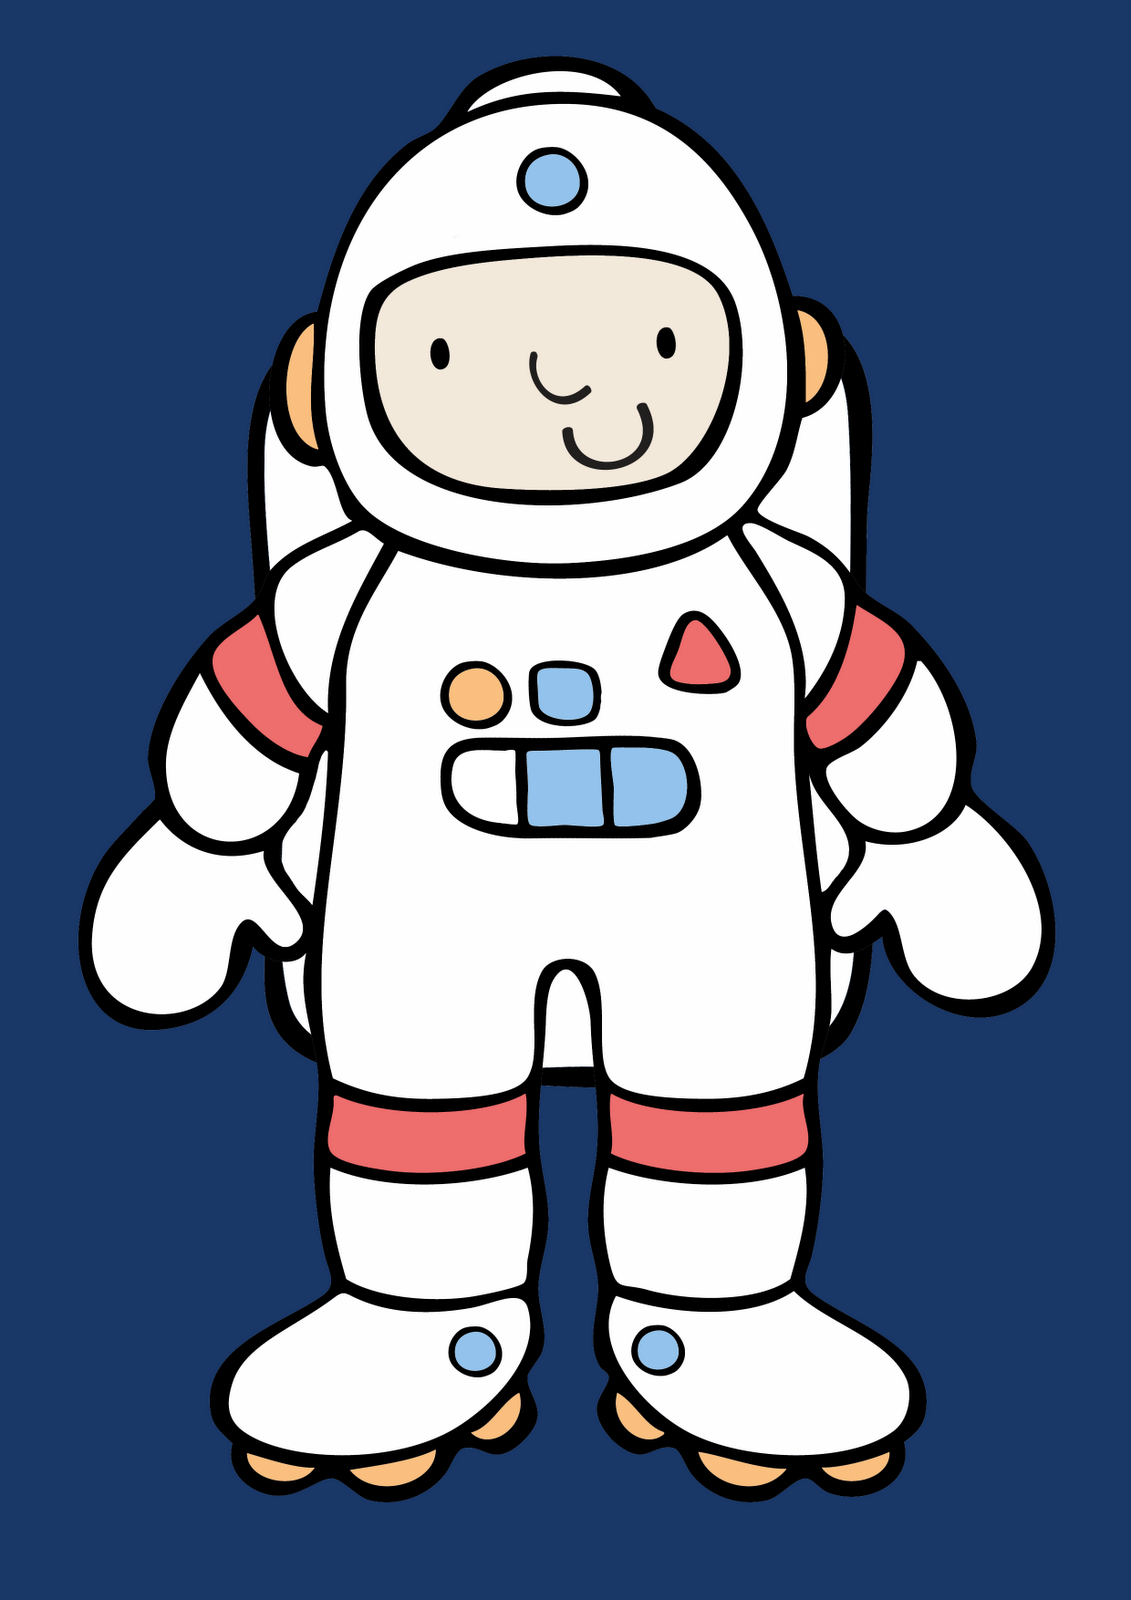 Шаблон космонавта для аппликации для детей. Космонавт для детей. Космонавт трафарет. Аппликация космонавт. Фигурка Космонавта для аппликации.